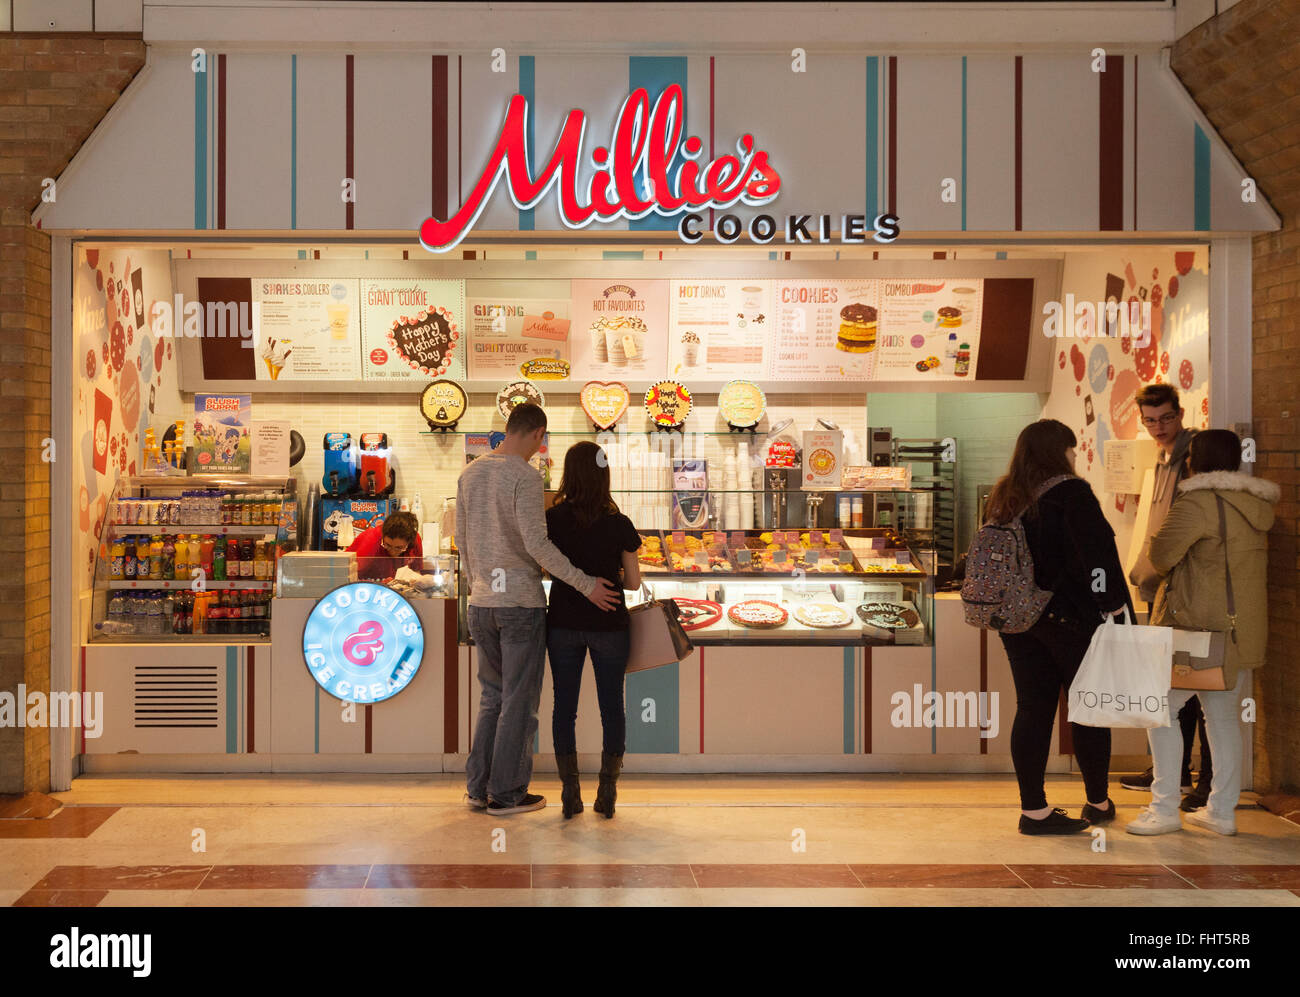 Millies cookies shop store, Grafton Center, Cambridge UK Banque D'Images